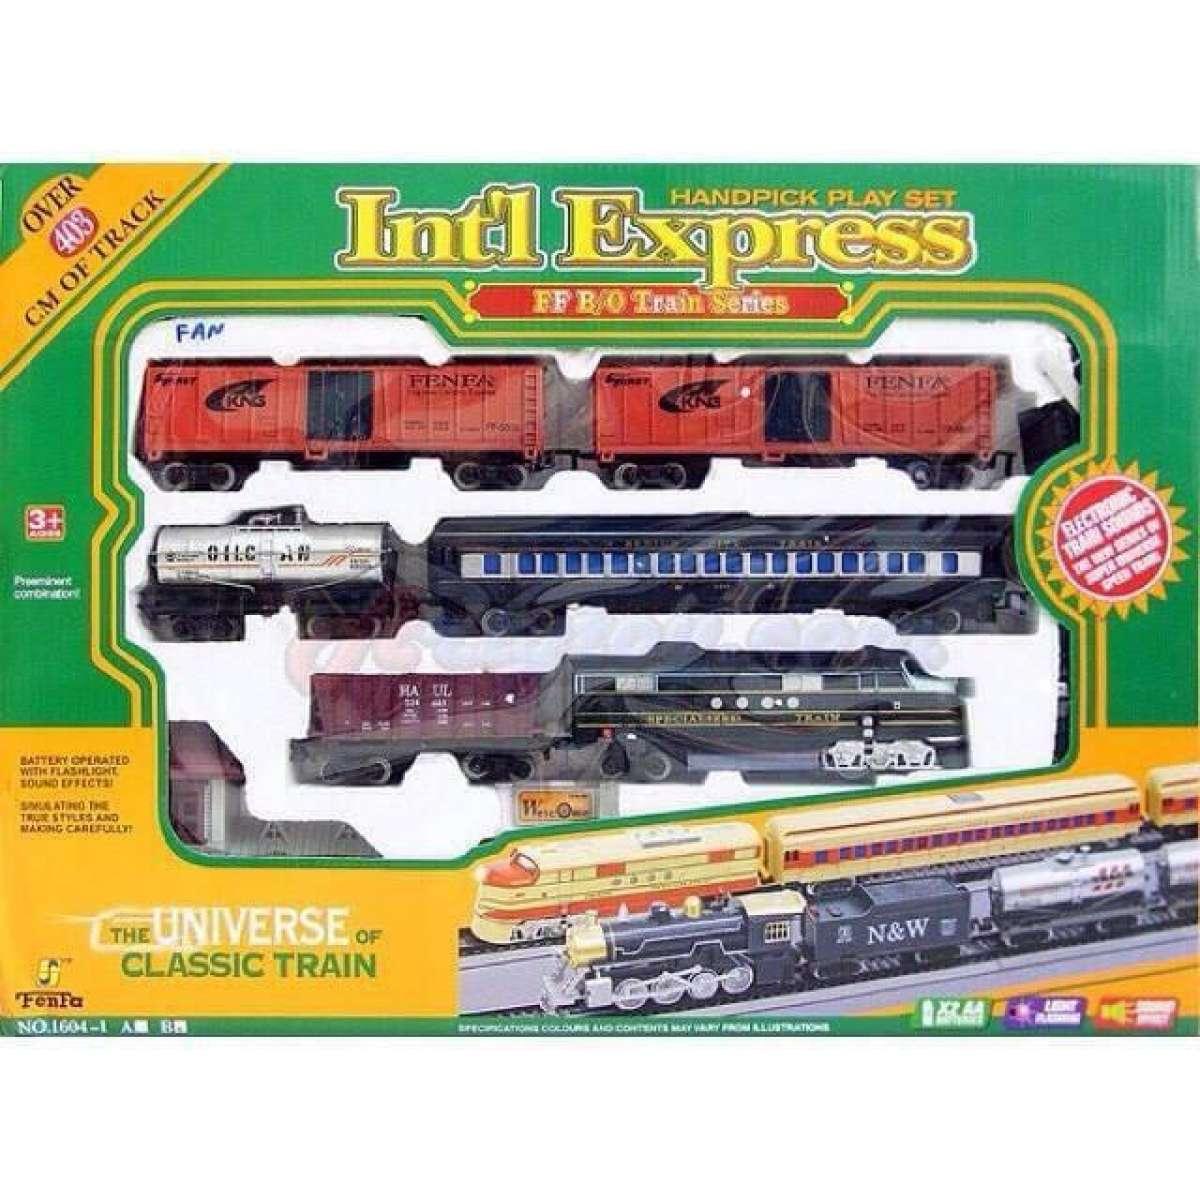 รถไฟวิ่งราง Int' Express (MFAN) ขนาดใหญ่ หัวรถไฟ มีเสียงและมีไฟ รถไฟวิ่งรางขบวนยาว 5 โบกี้